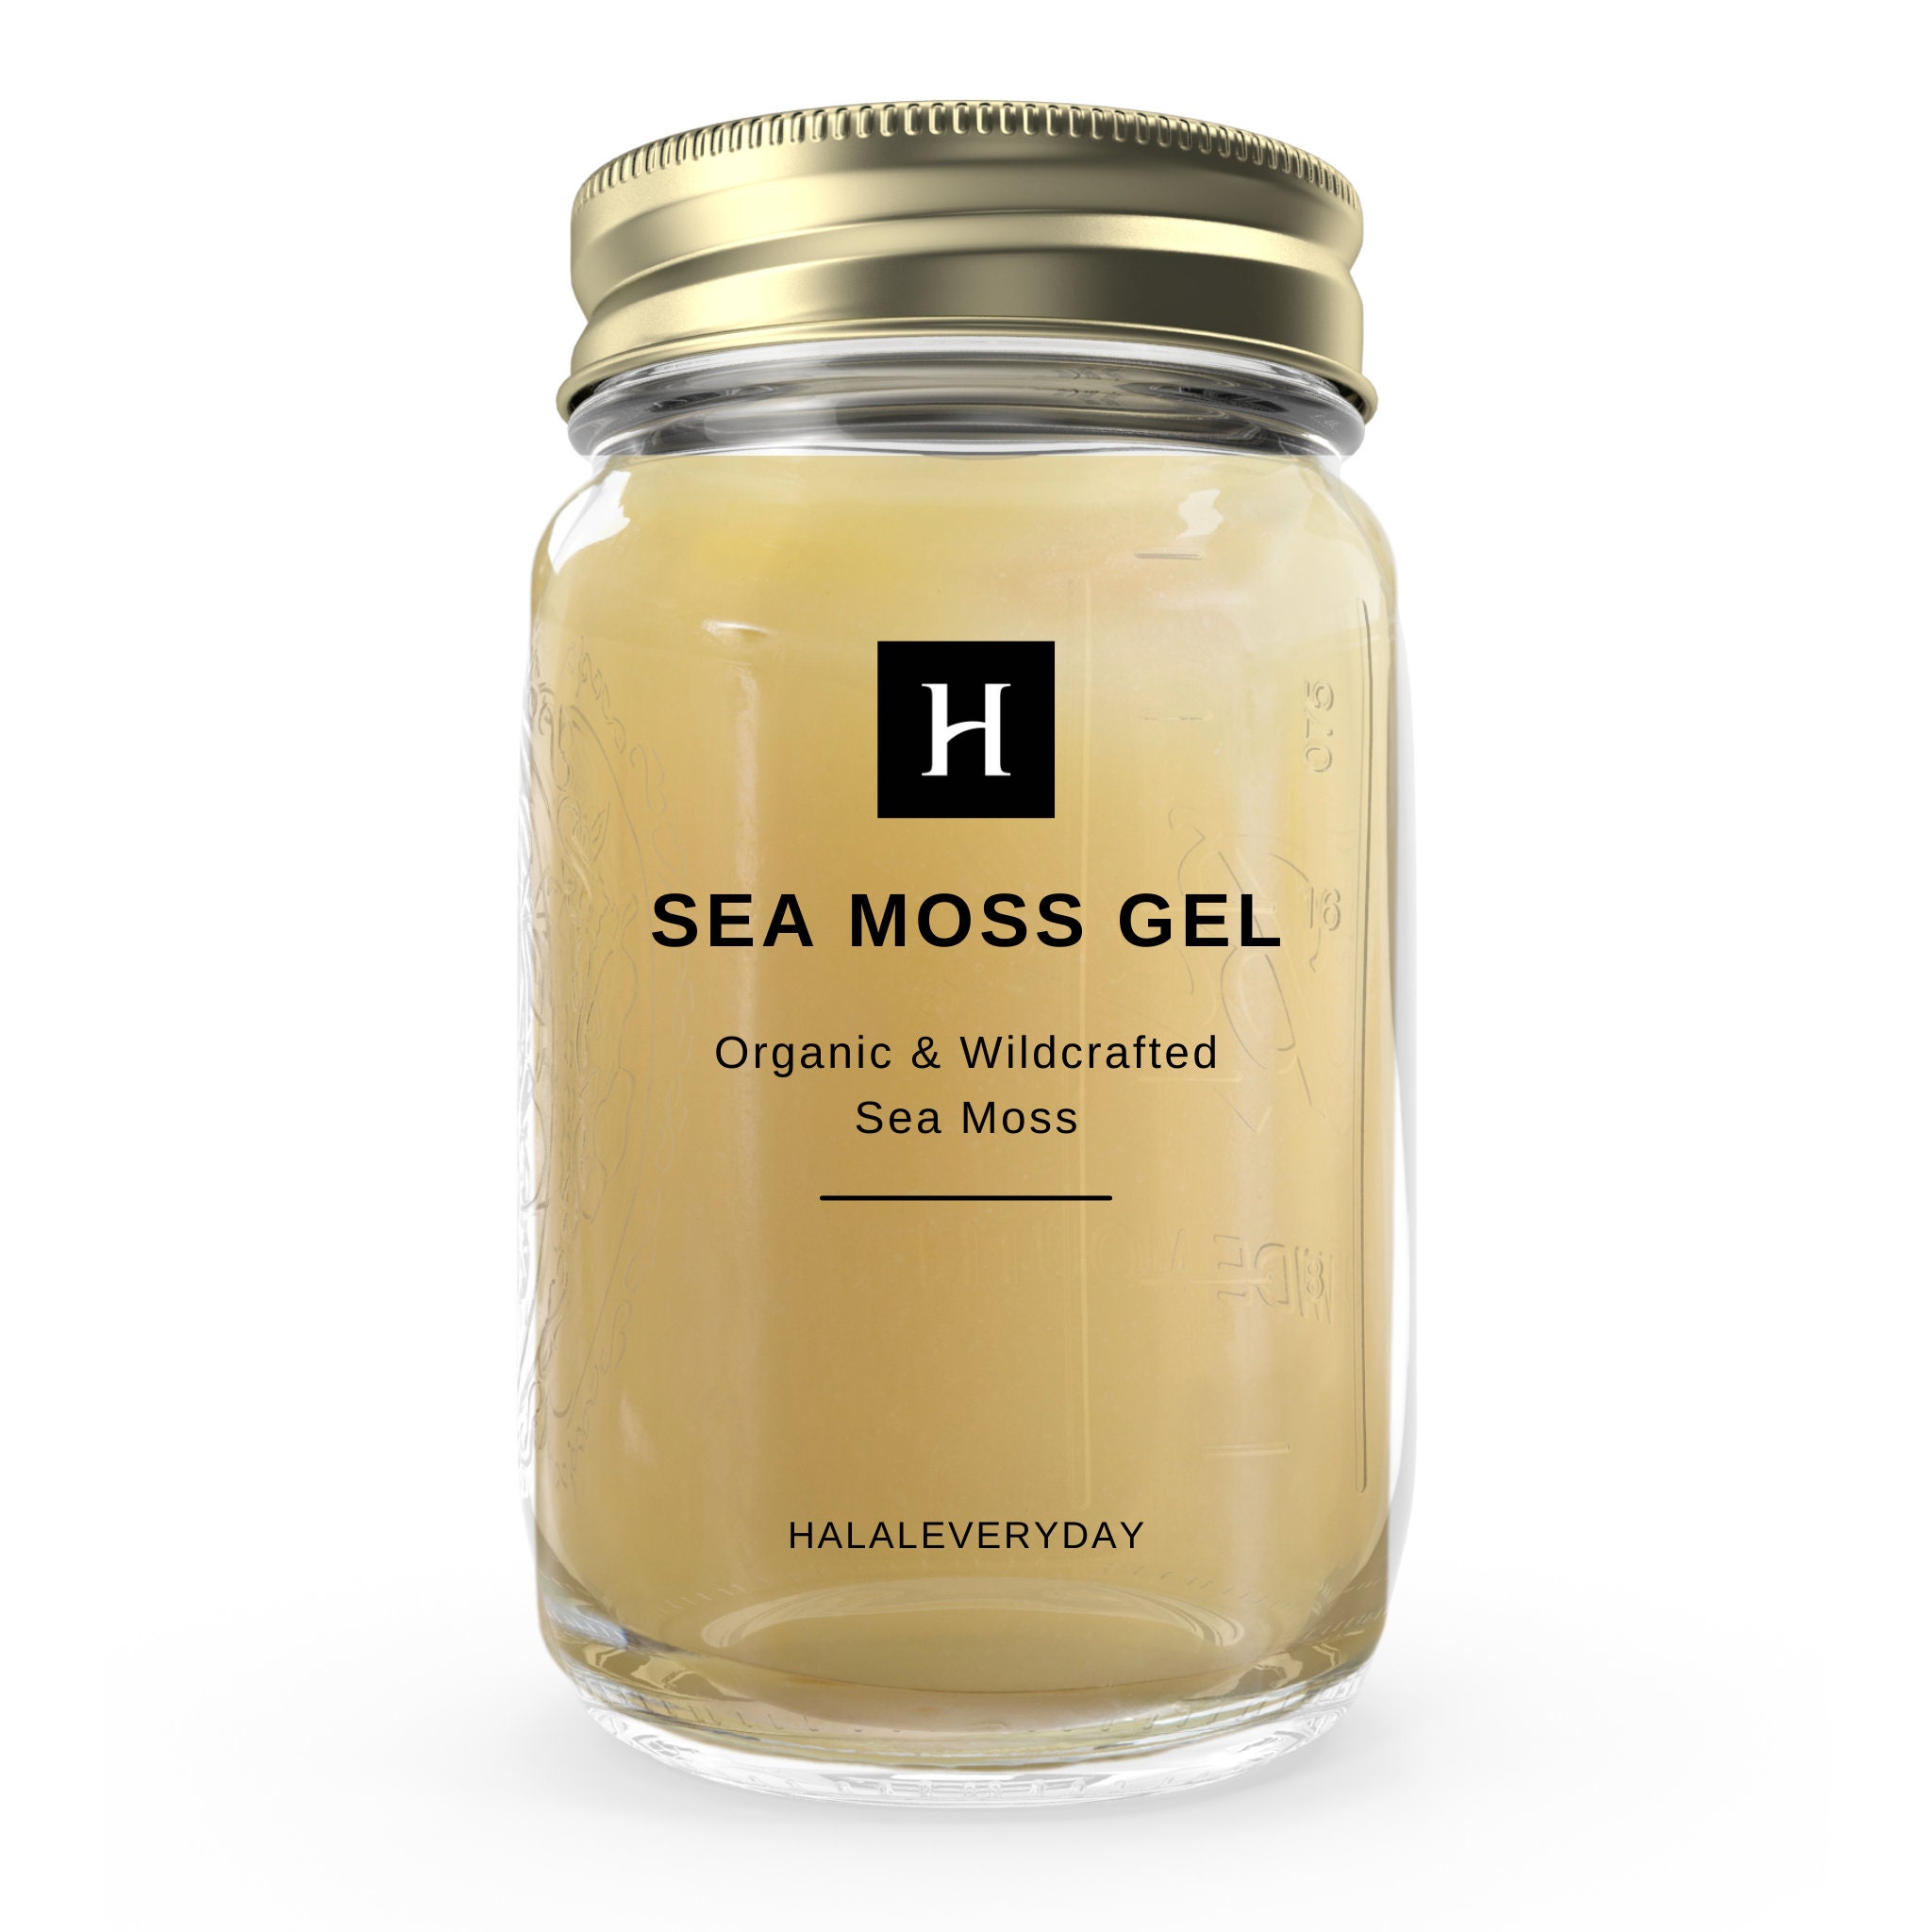 Flavored SeaMoss Gel - Sea Moss Gel - Righteous SeaMoss LLC